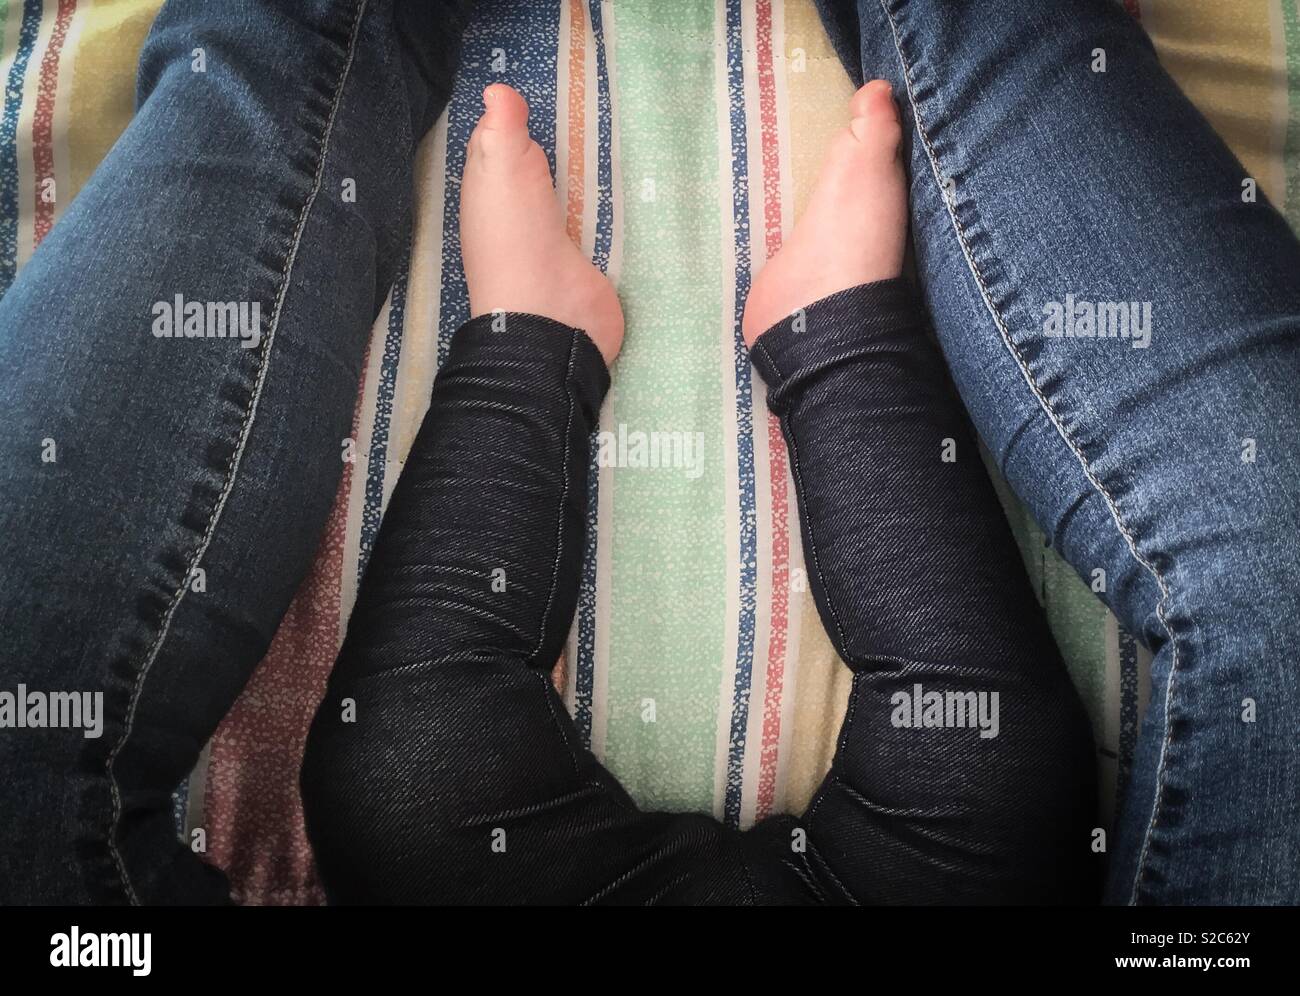 La mamá y el bebé se sientan juntos en jeans Foto de stock